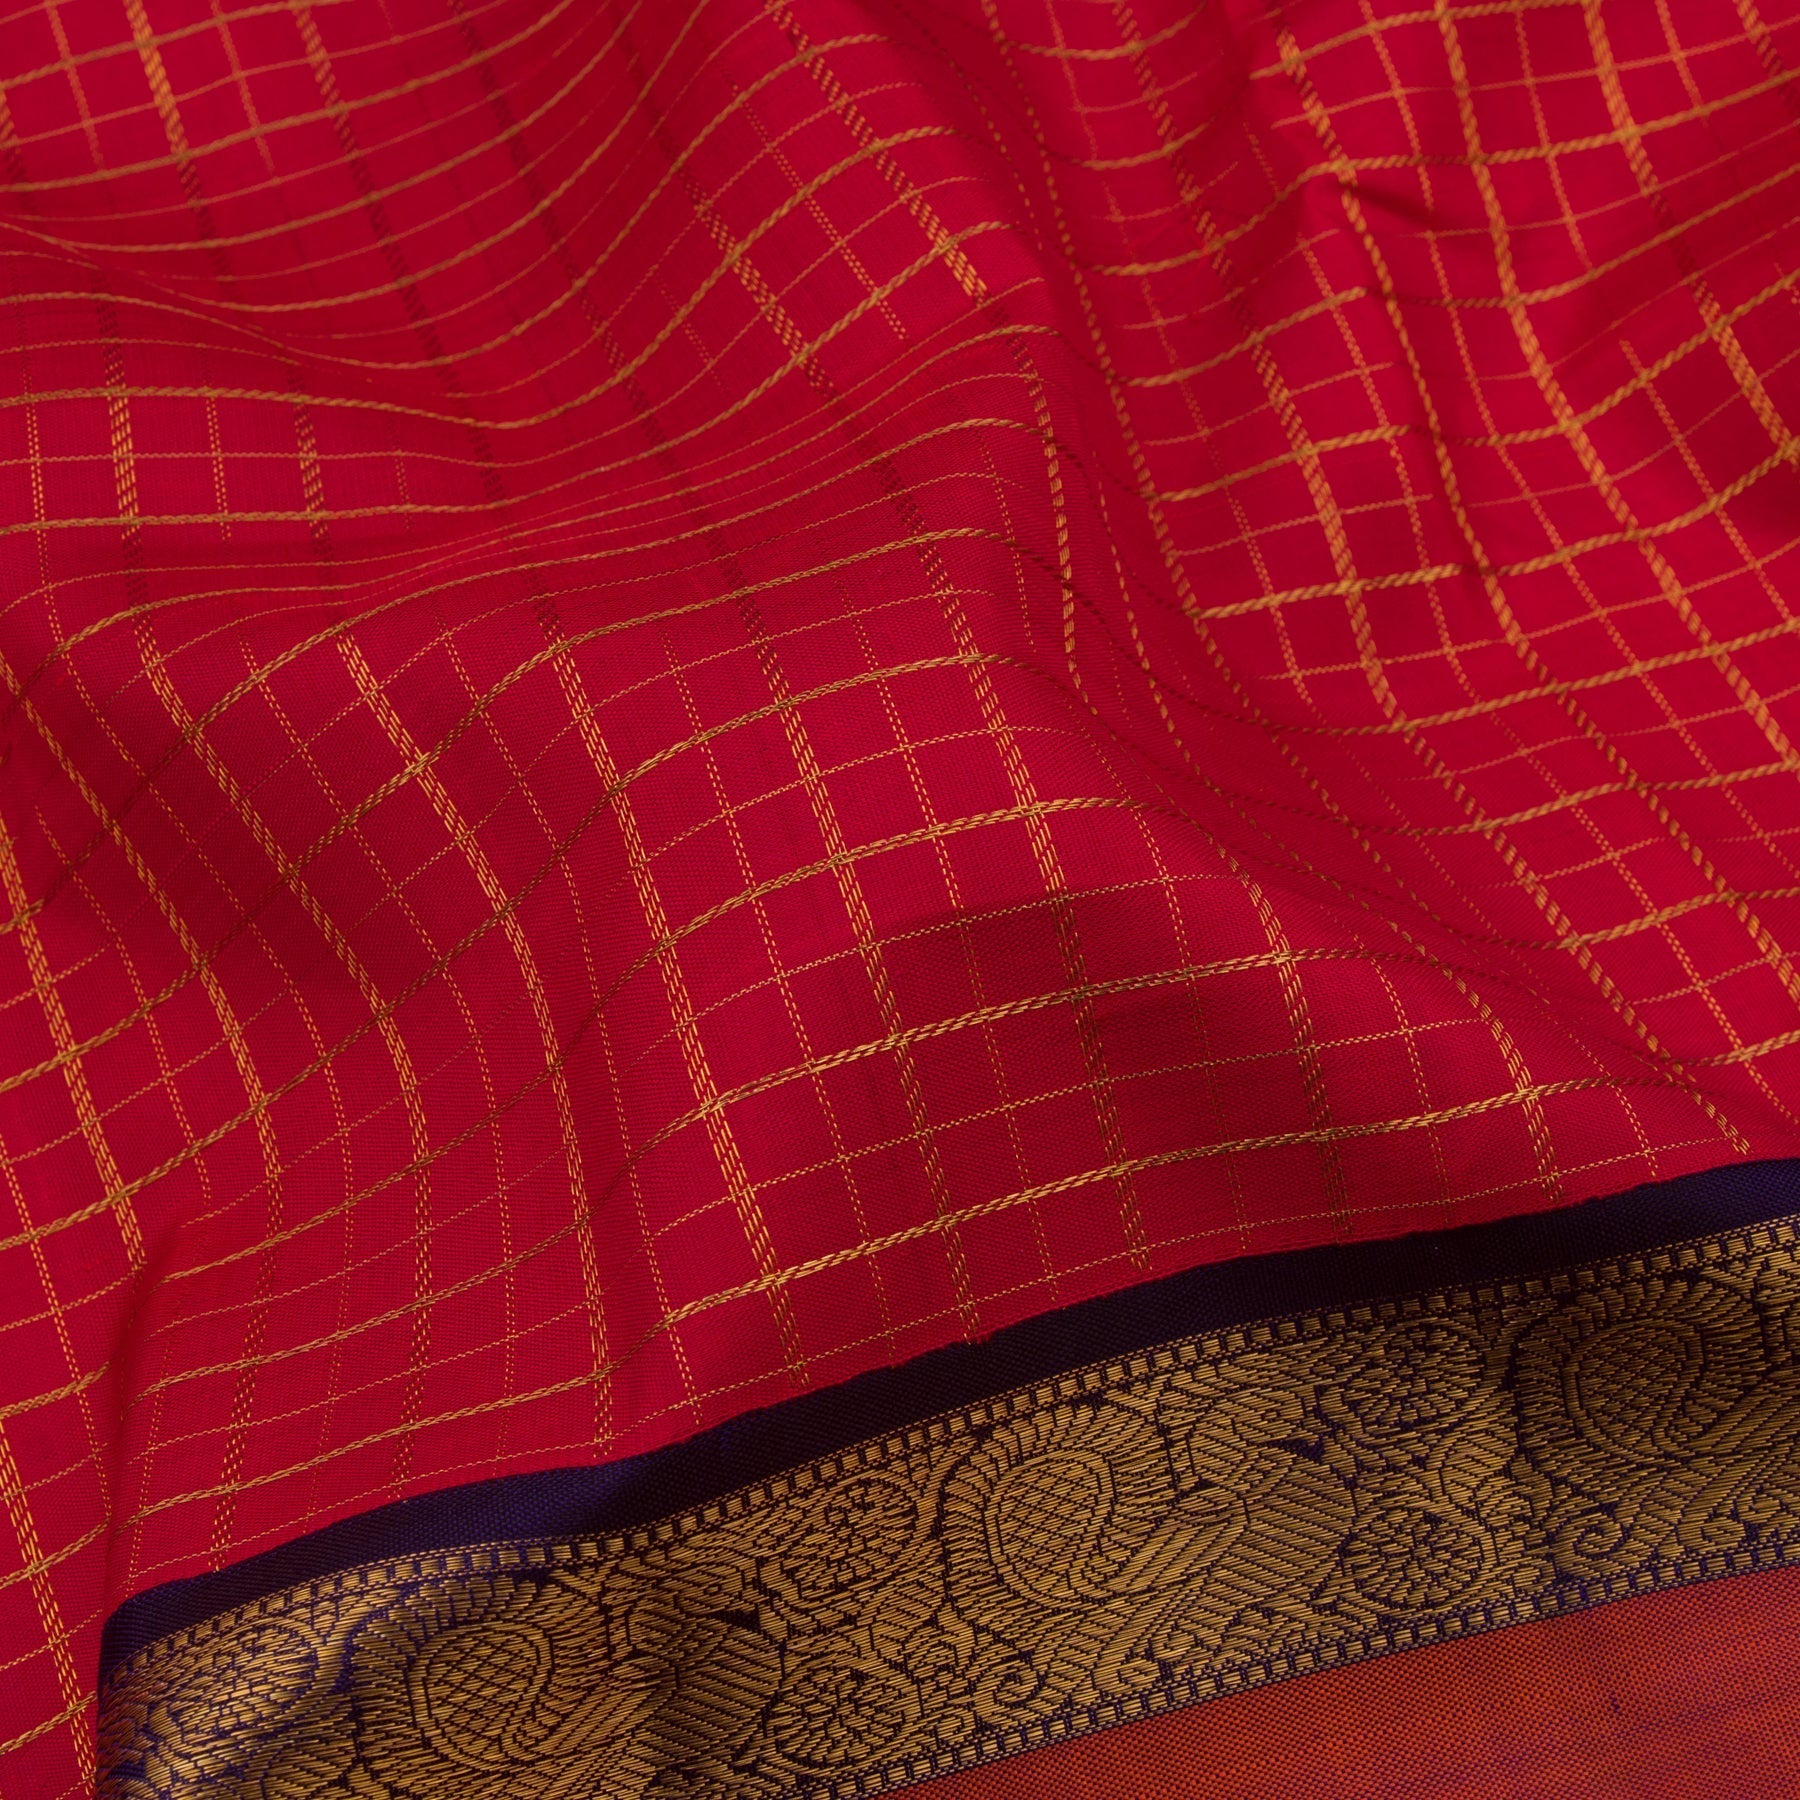 Kanakavalli Kanjivaram Silk Sari 21-110-HS001-02800 - Fabric View